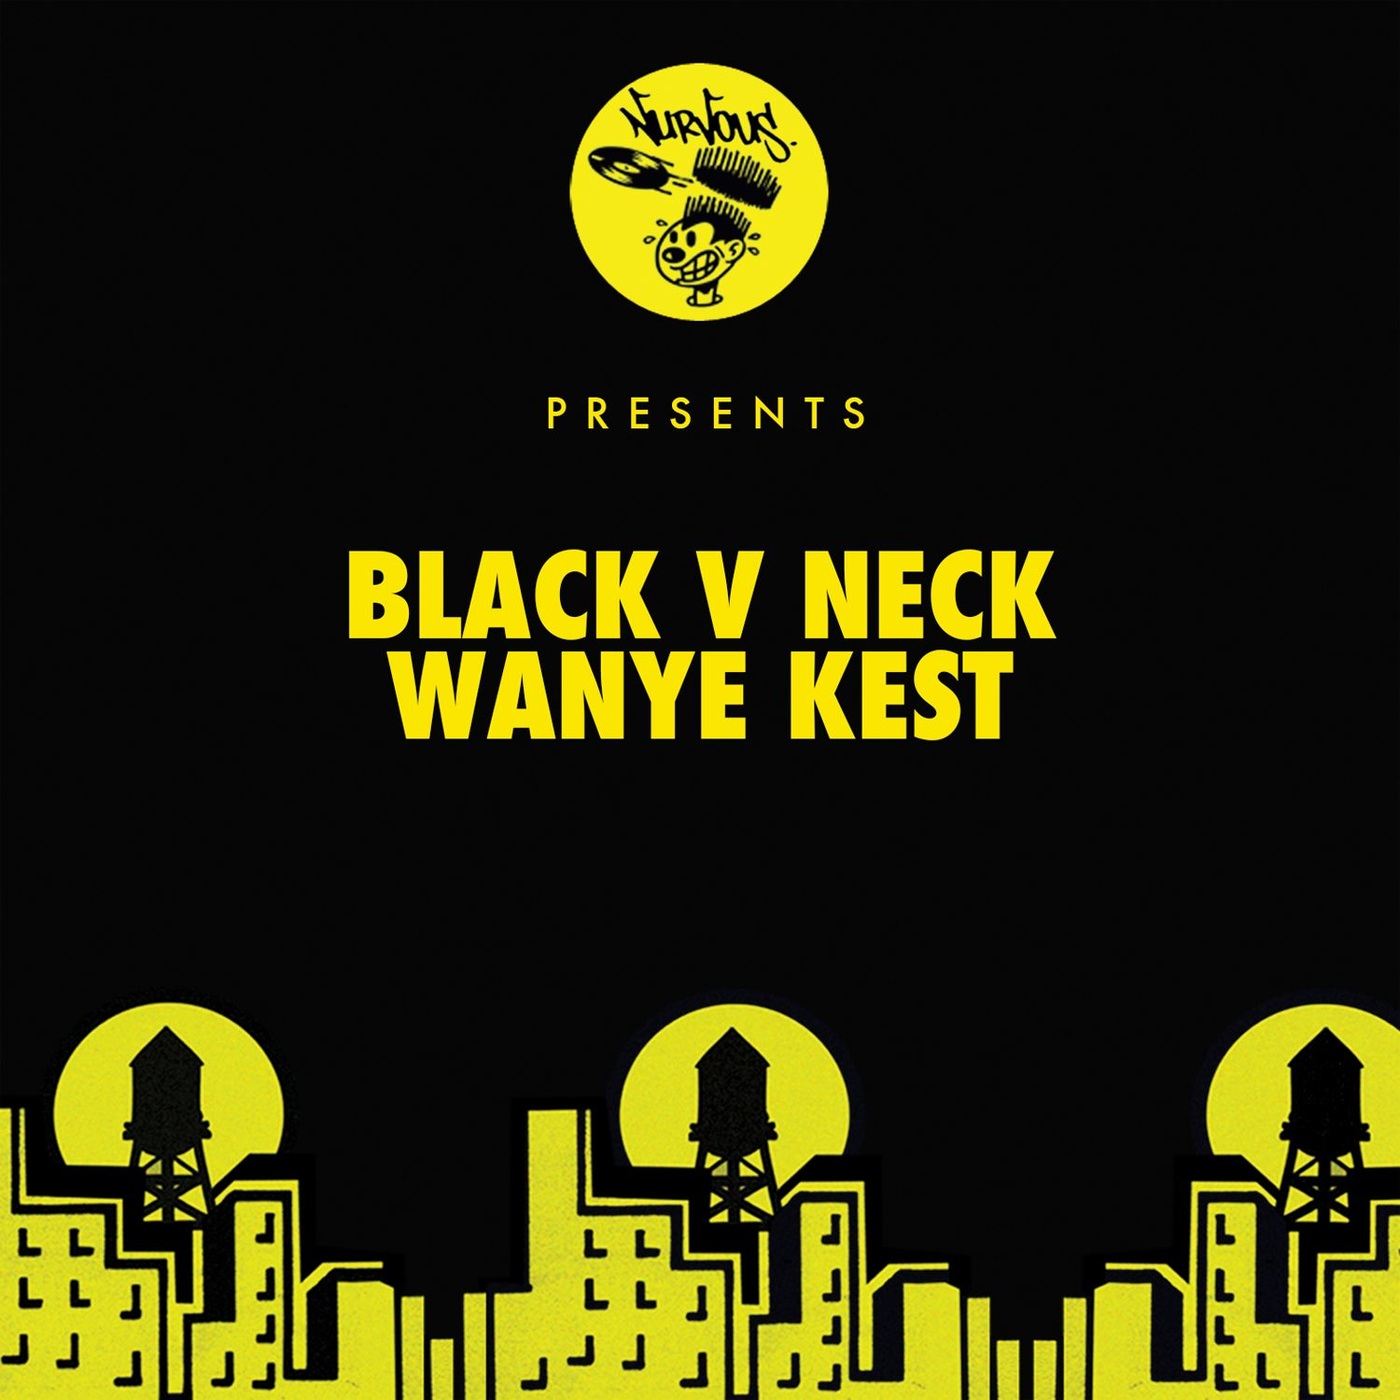 Black V Neck - Wanye Kest / Nurvous Records